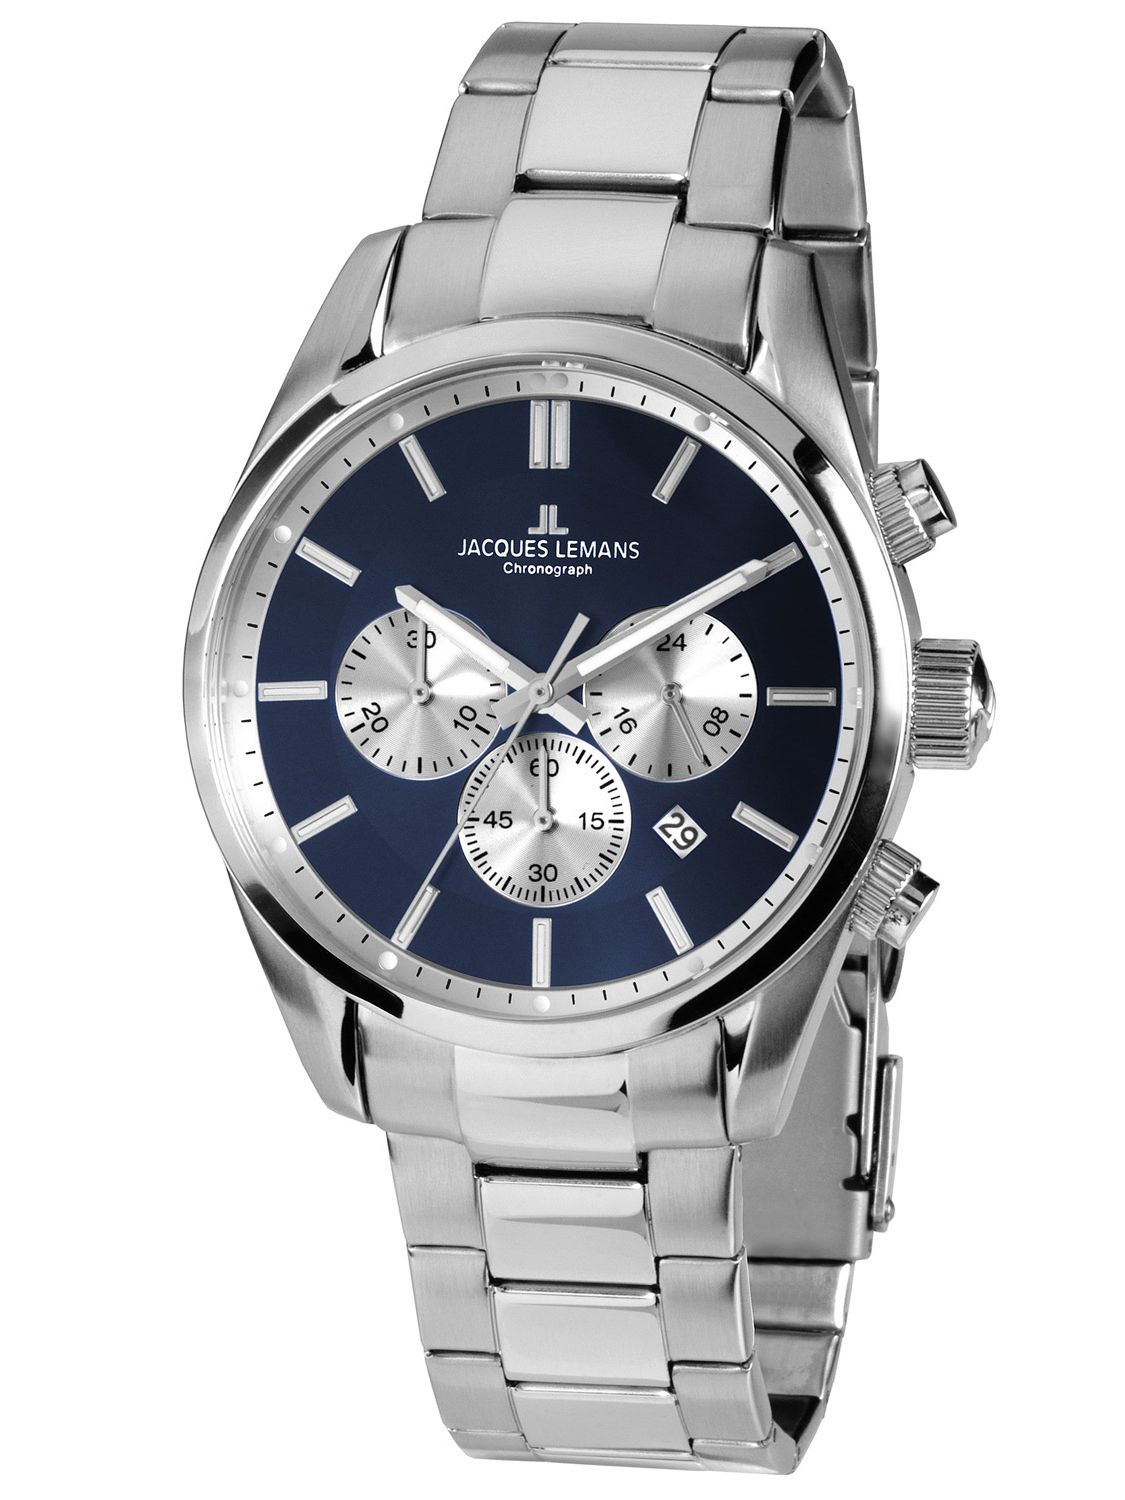 Jacques uhrcenter Chronograph 42-6.1F Wristwatch Lemans • 42-6F Men\'s Classic